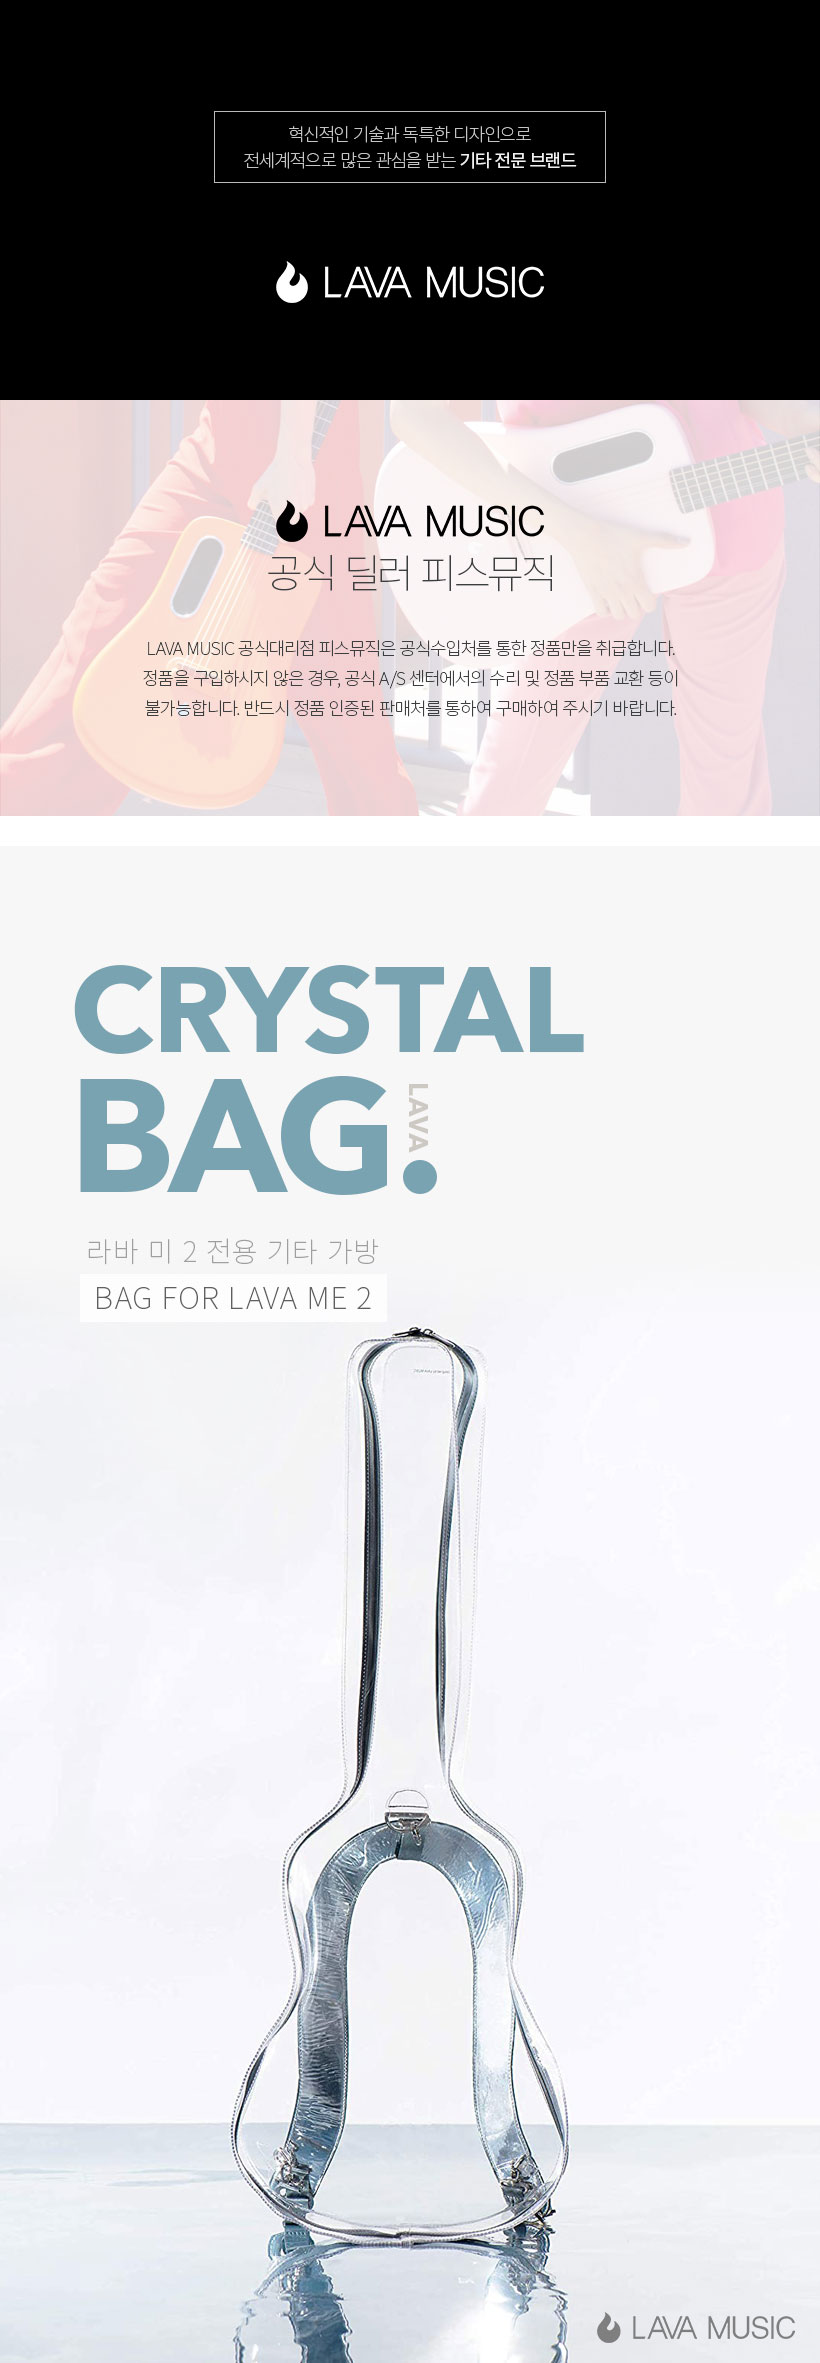 라바 기타 케이스 Crystal Bag